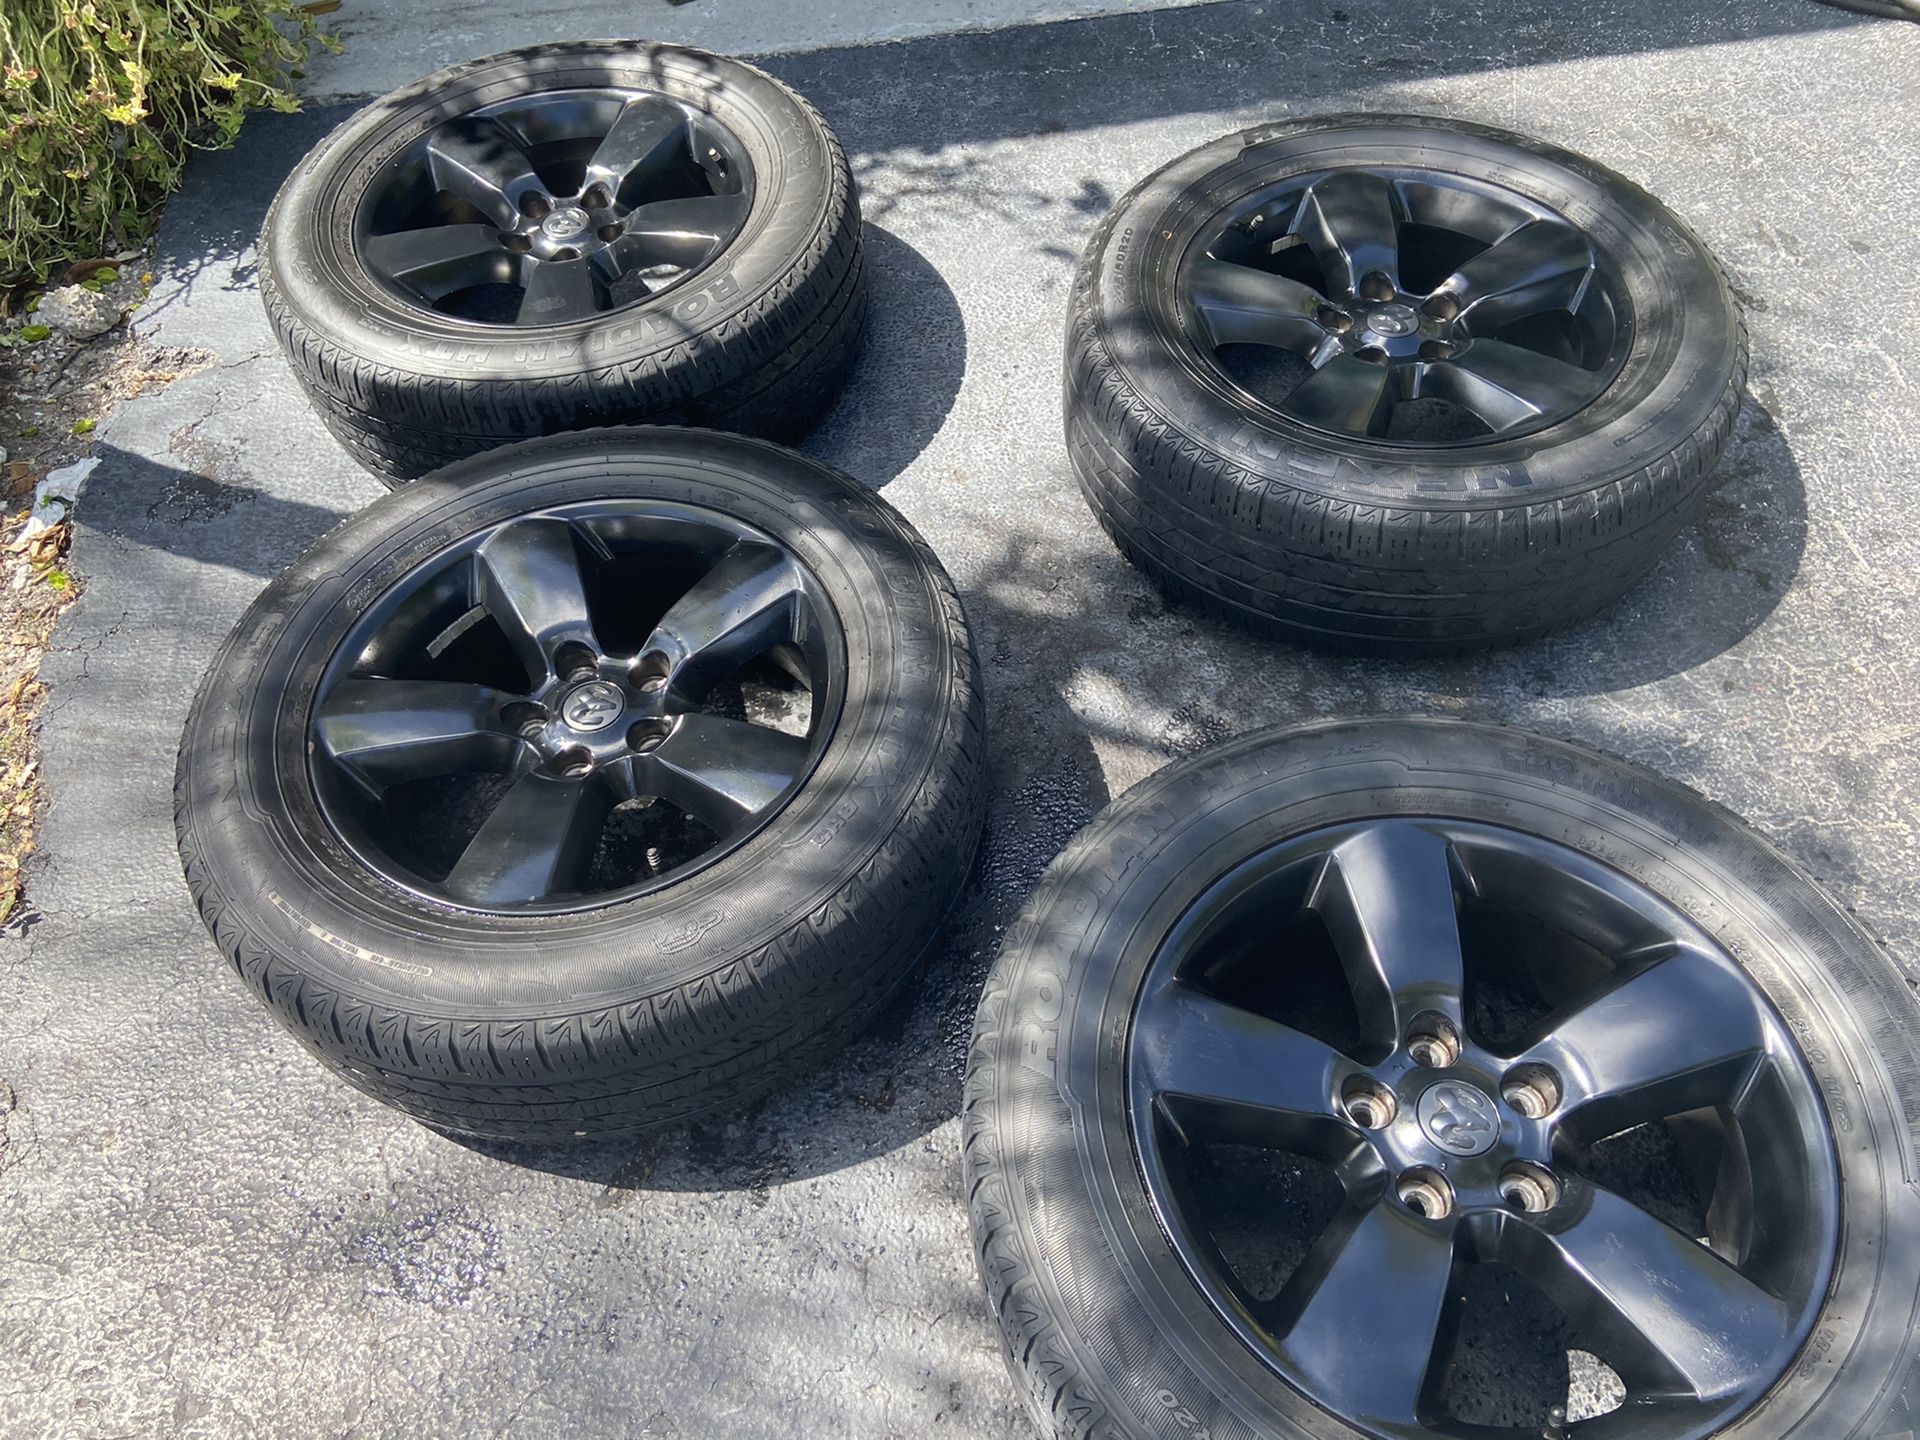 Wheels & Tires Ram 2018 20”with original air sensors $600